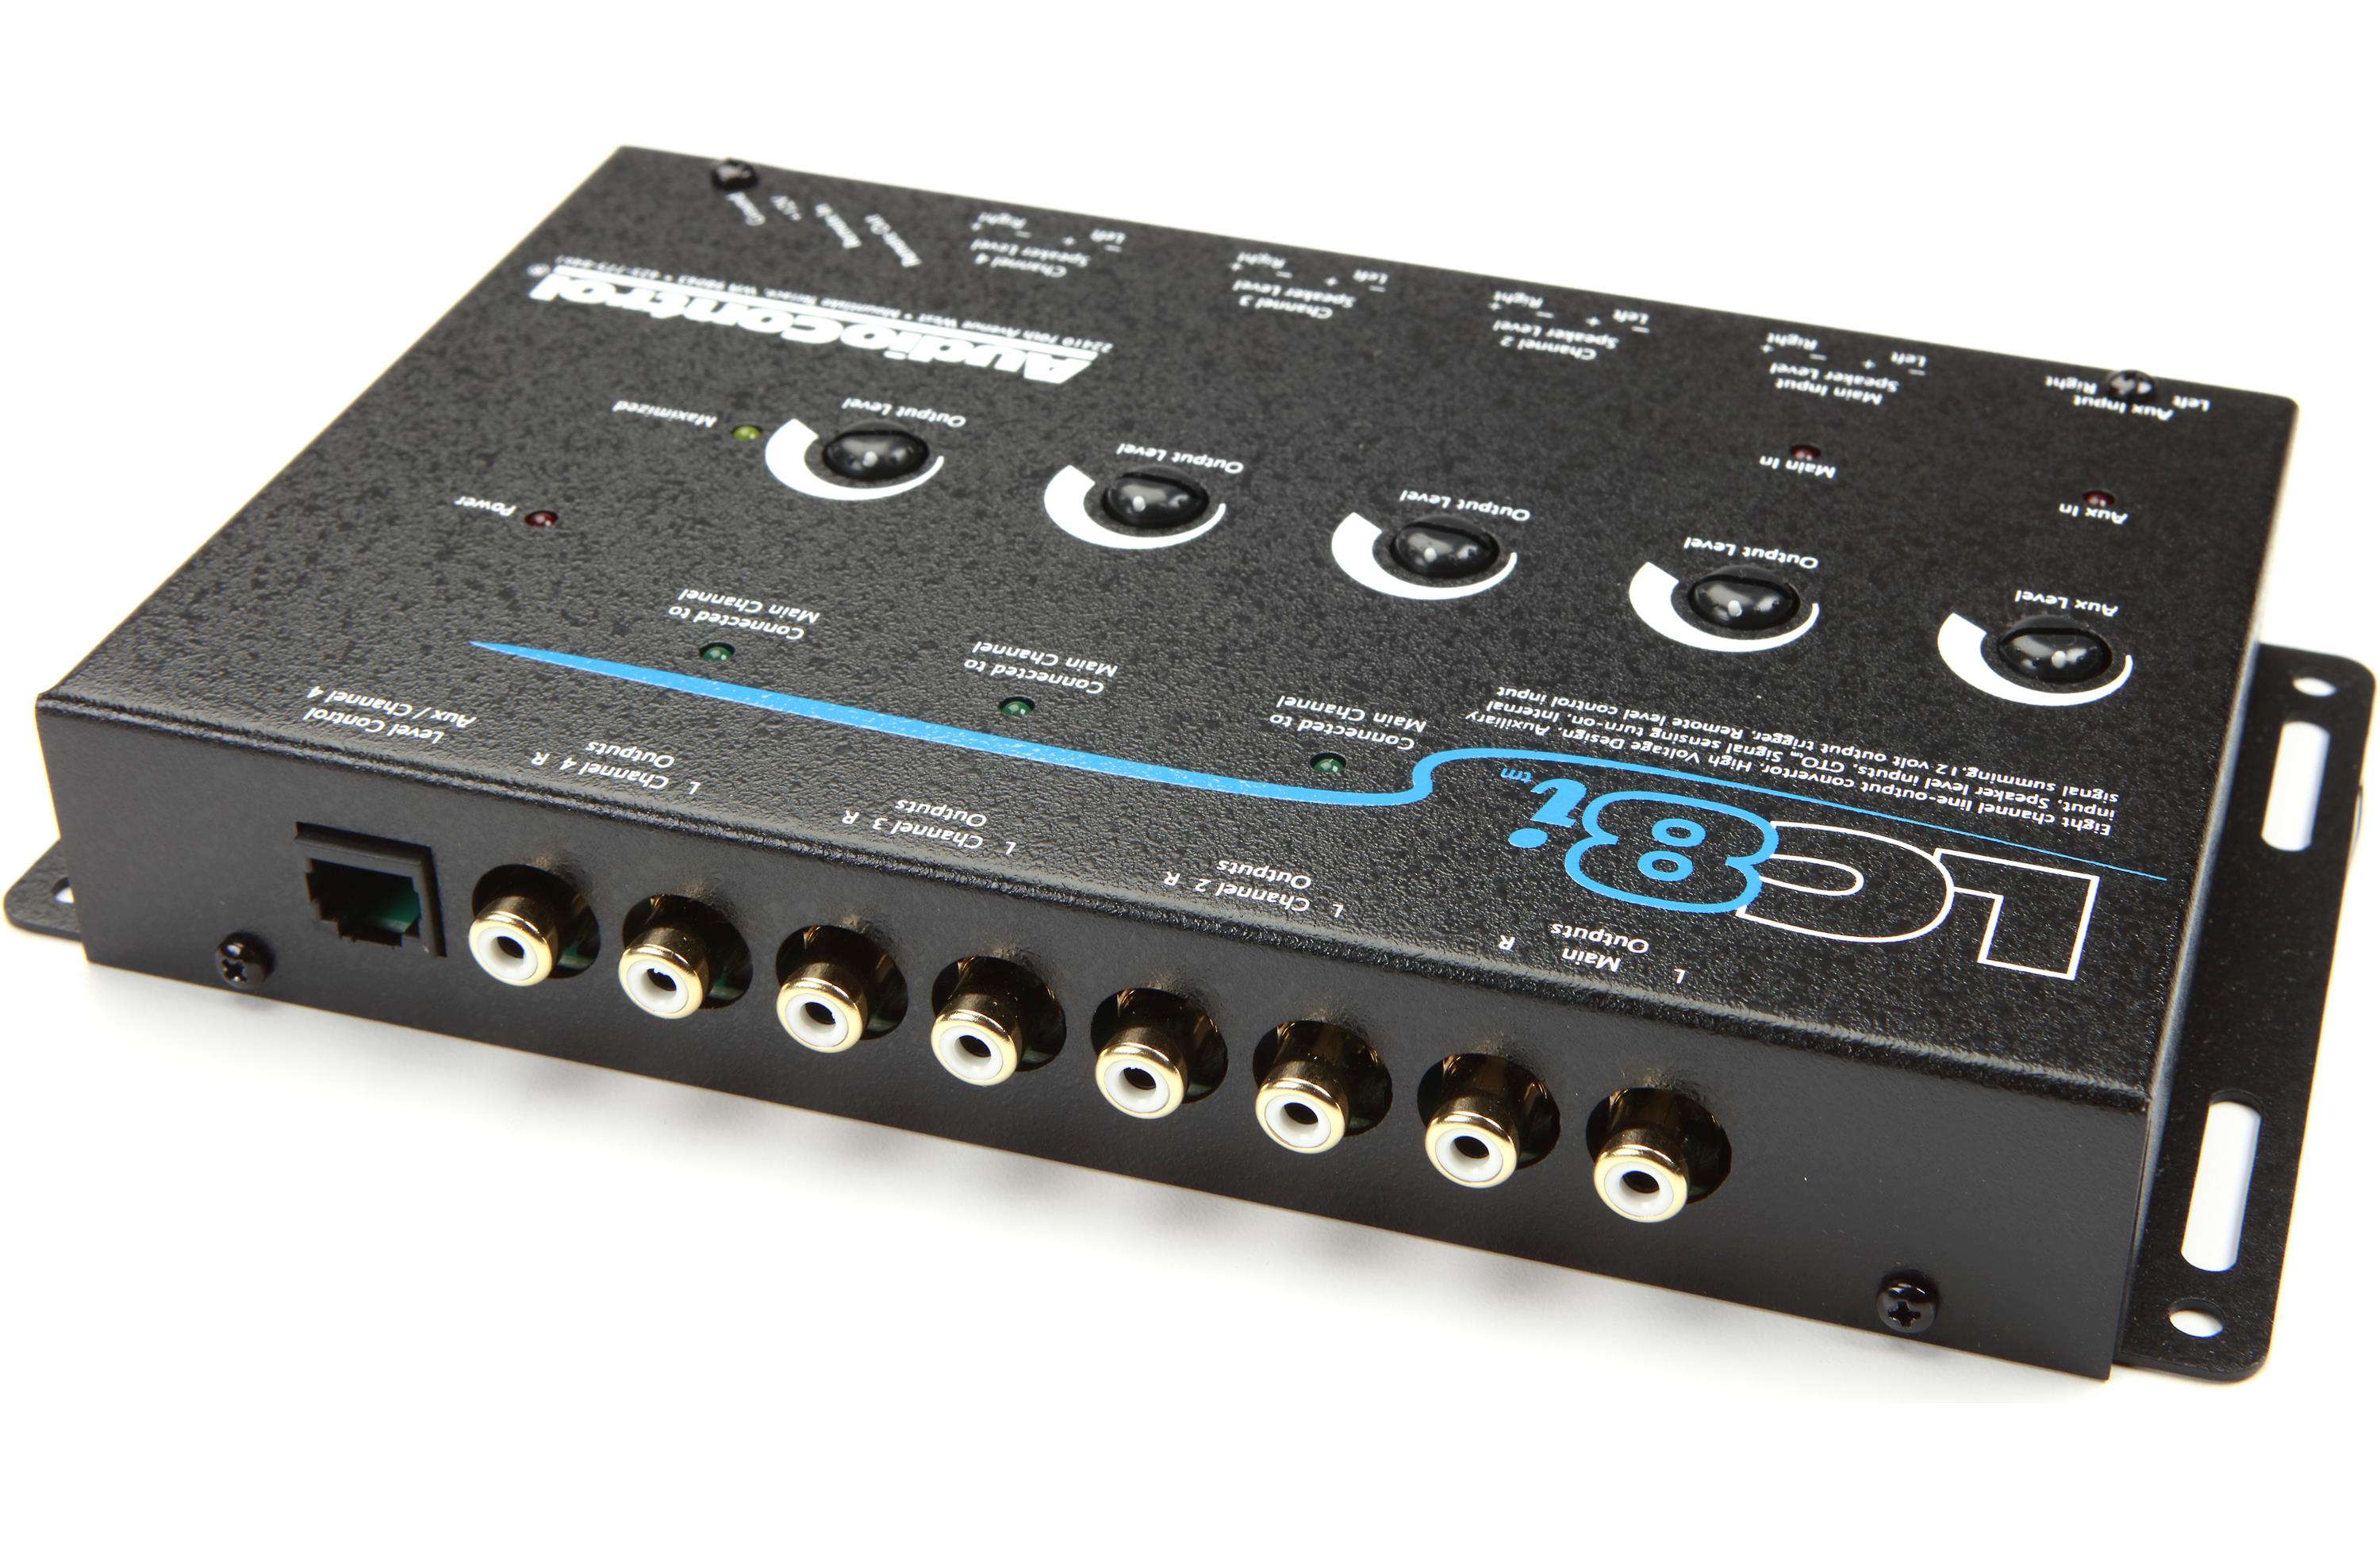 Audio Control LC8i